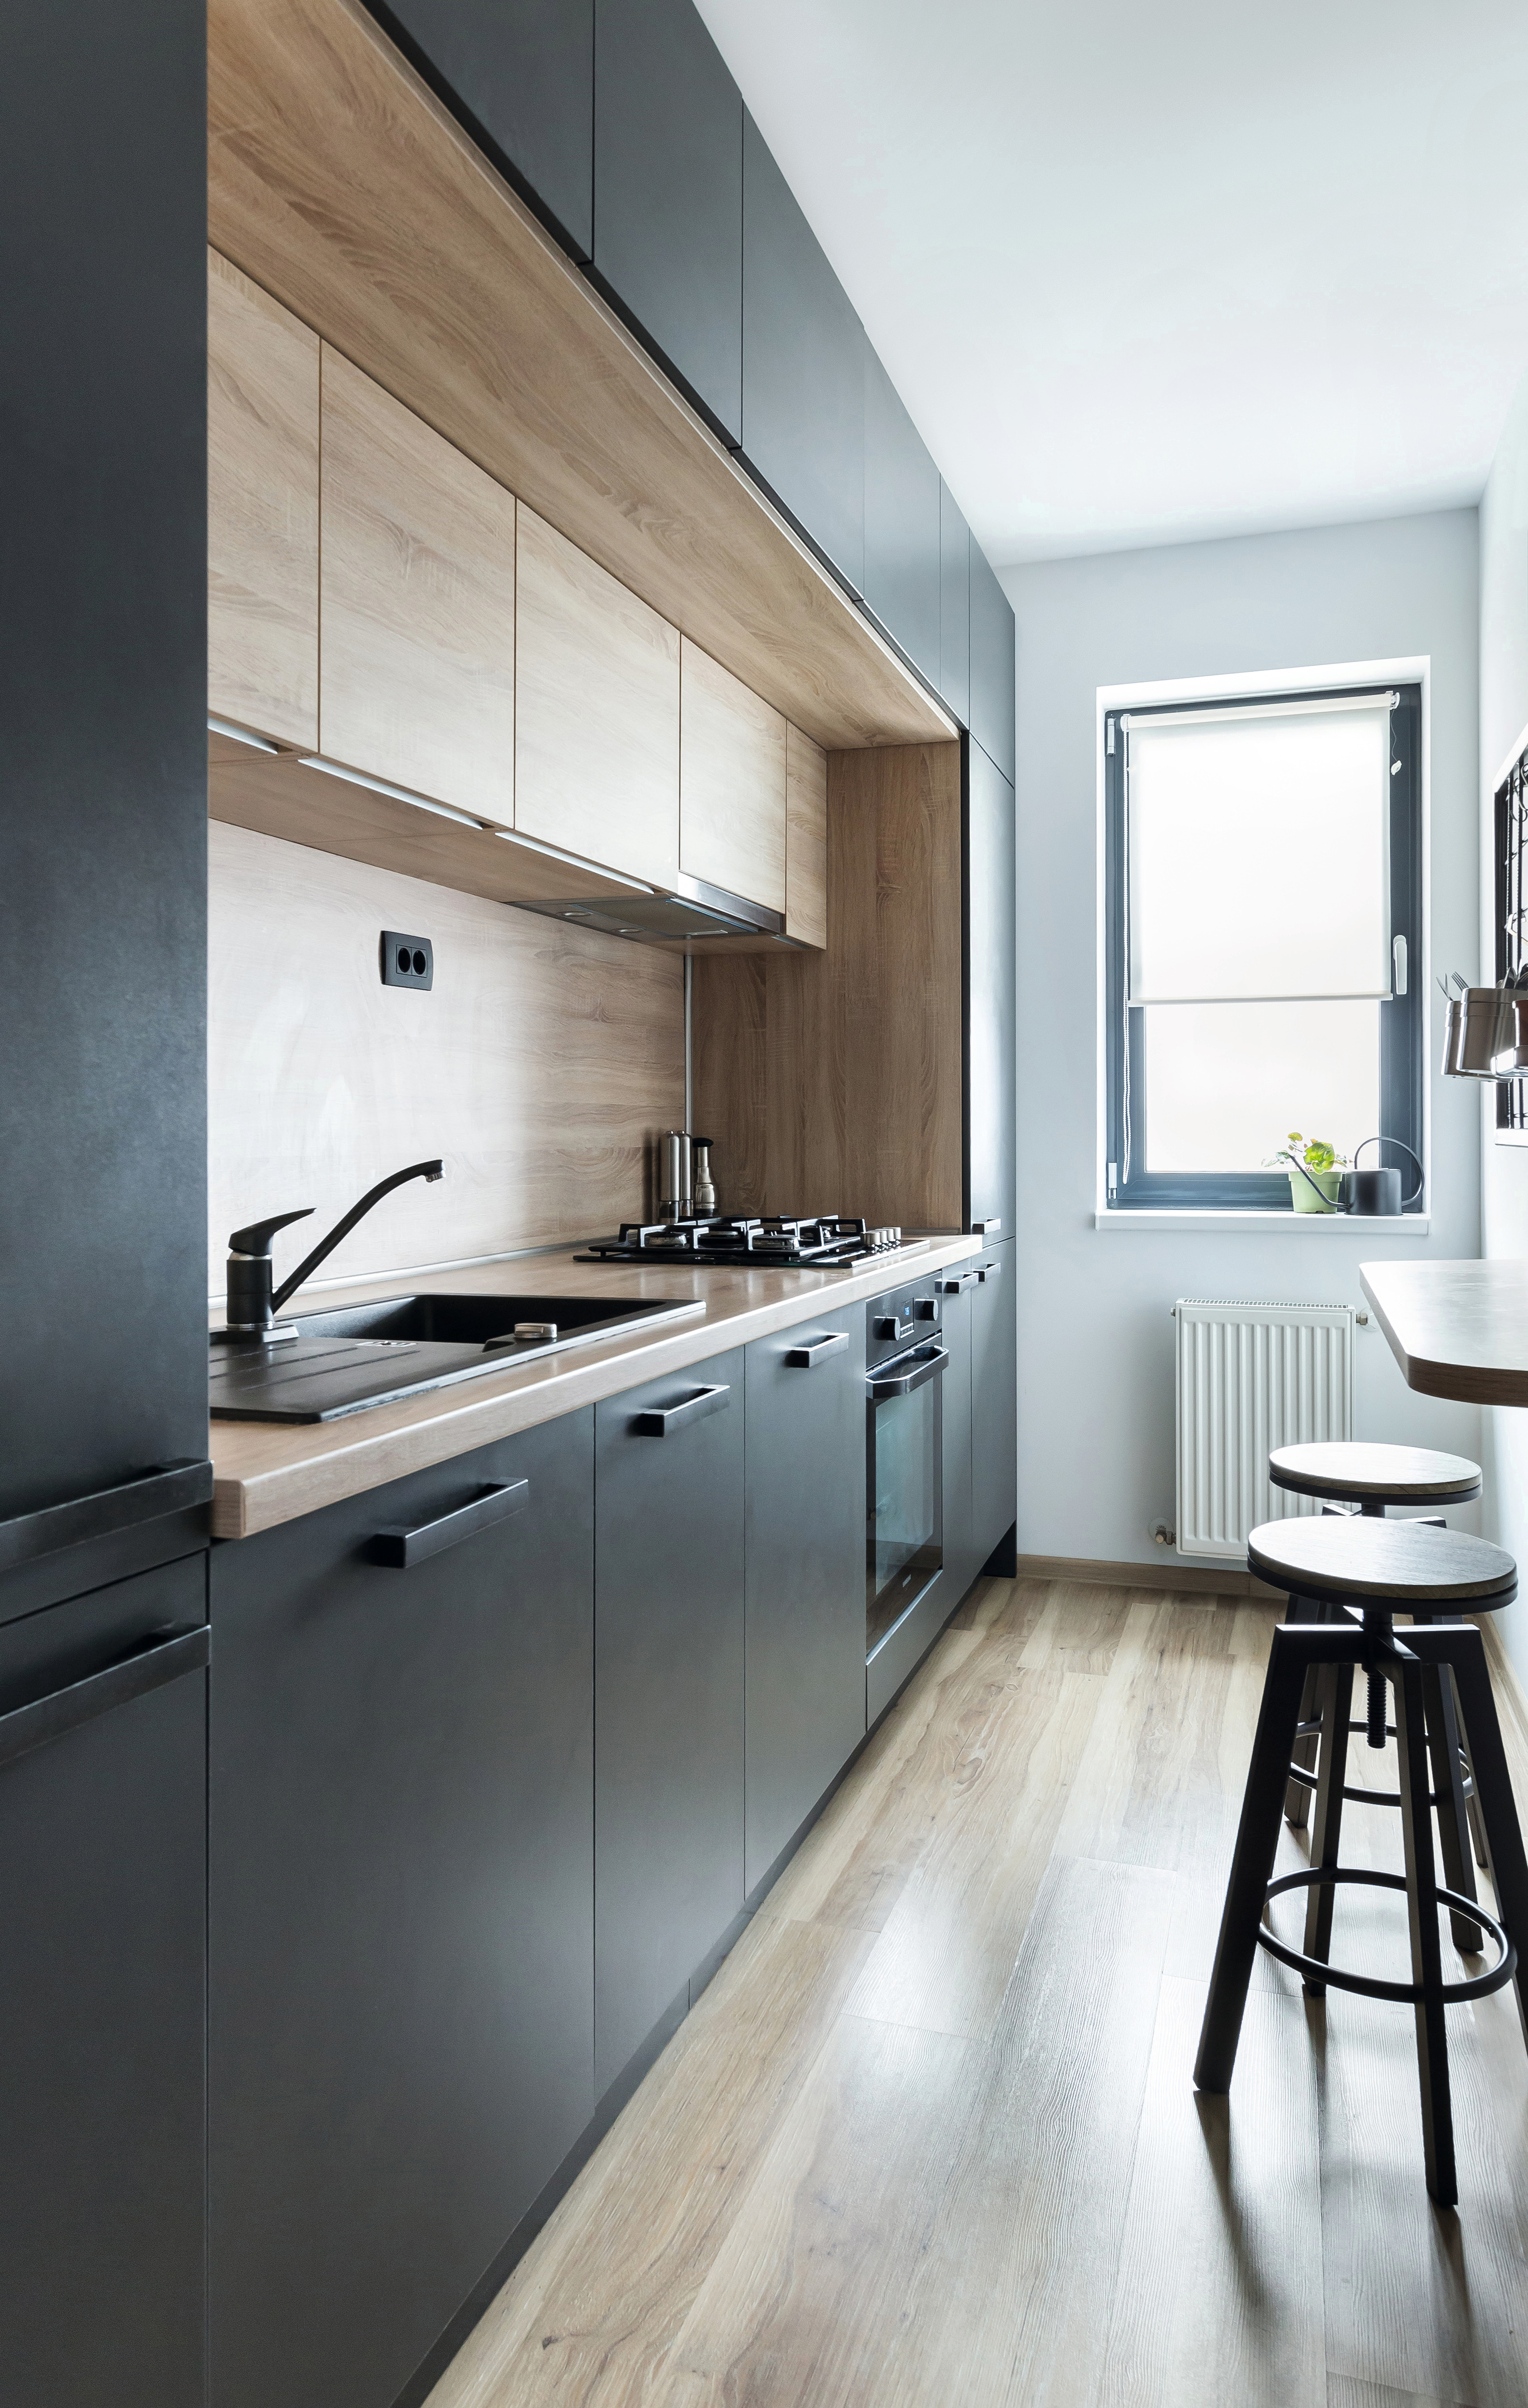 Správný výběr barev a geometrické uspořádání vytváří moderní vzhled kuchyně.